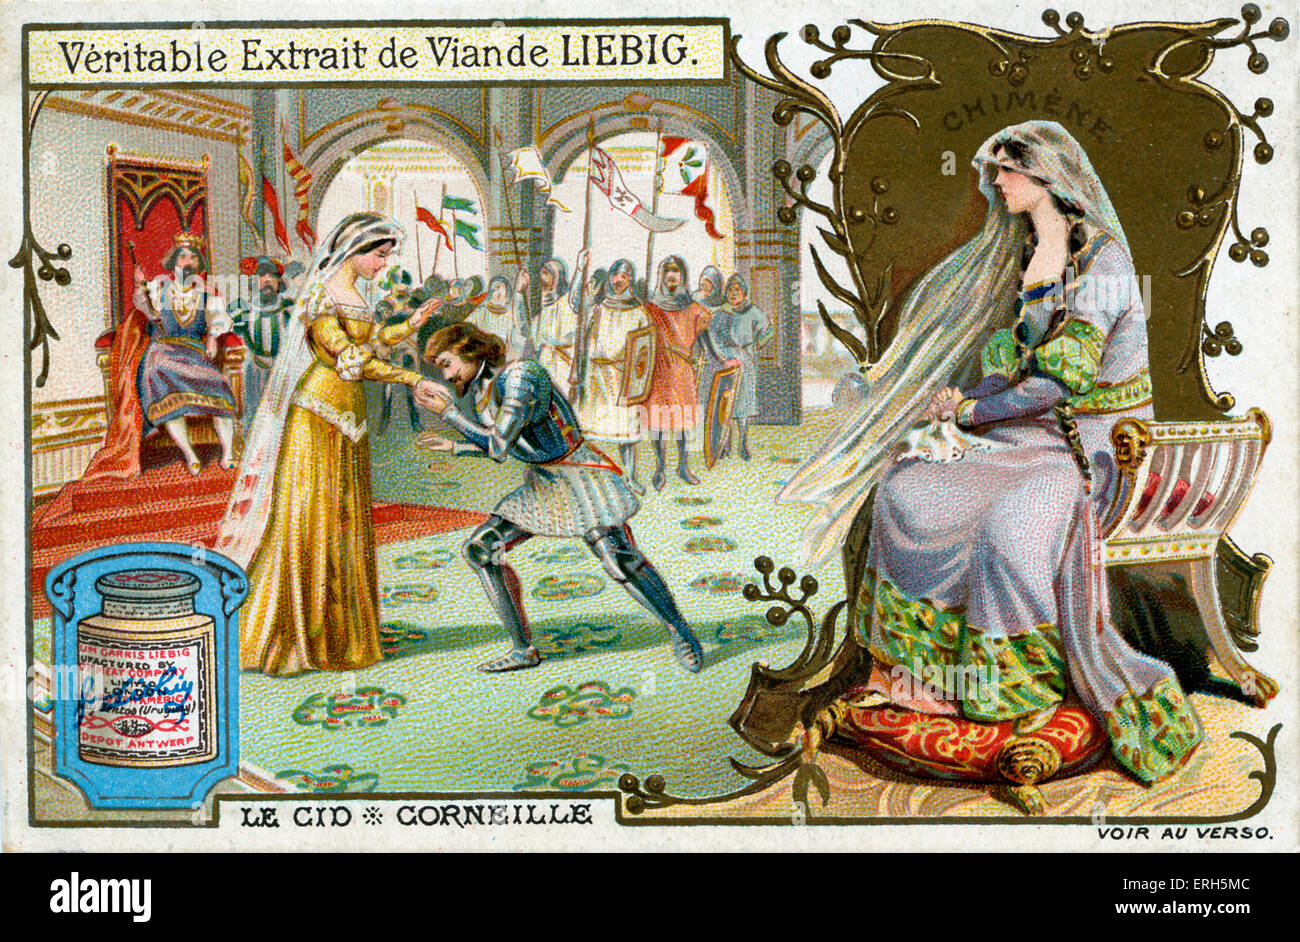 Le Cid de Corneille - illustration de Liebig extraits de viande de carte de  collection. Scène montrant Le Cid en tenant la main de son Photo Stock -  Alamy